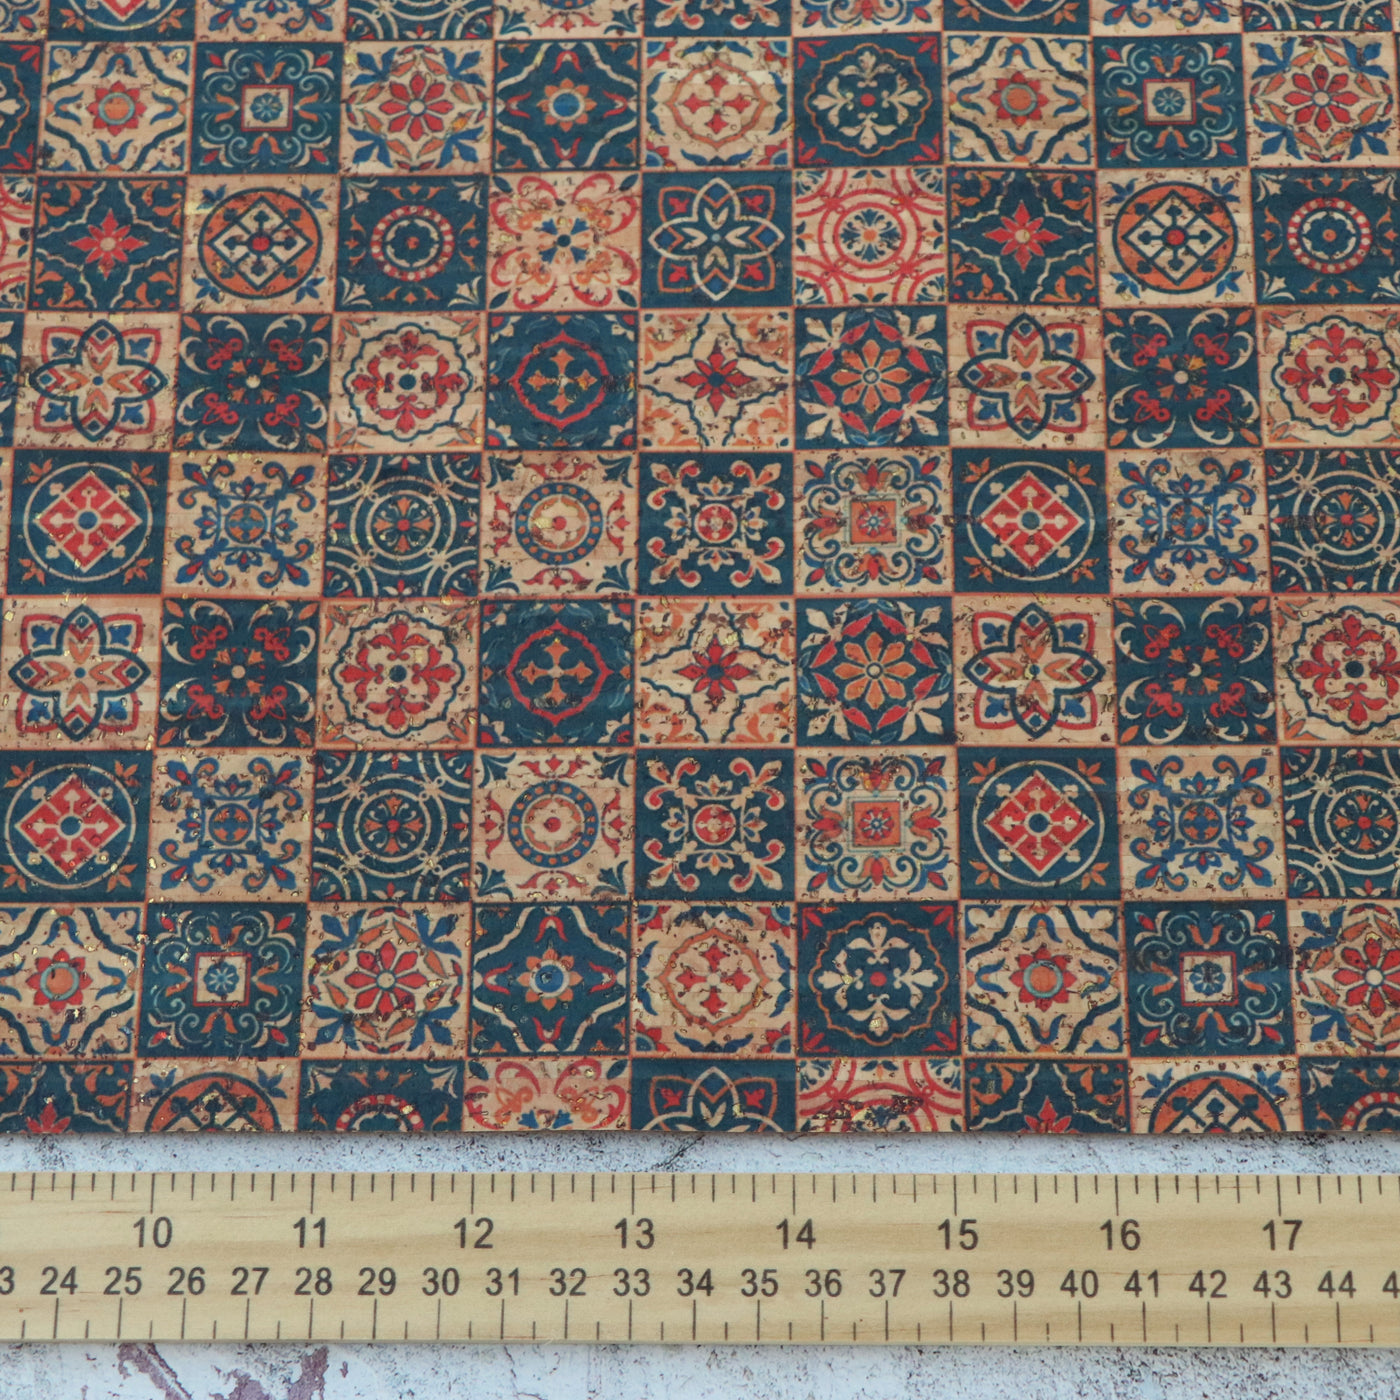 Edición limitada de 1/2 yarda: tela de corcho con mosaico marroquí con motas doradas